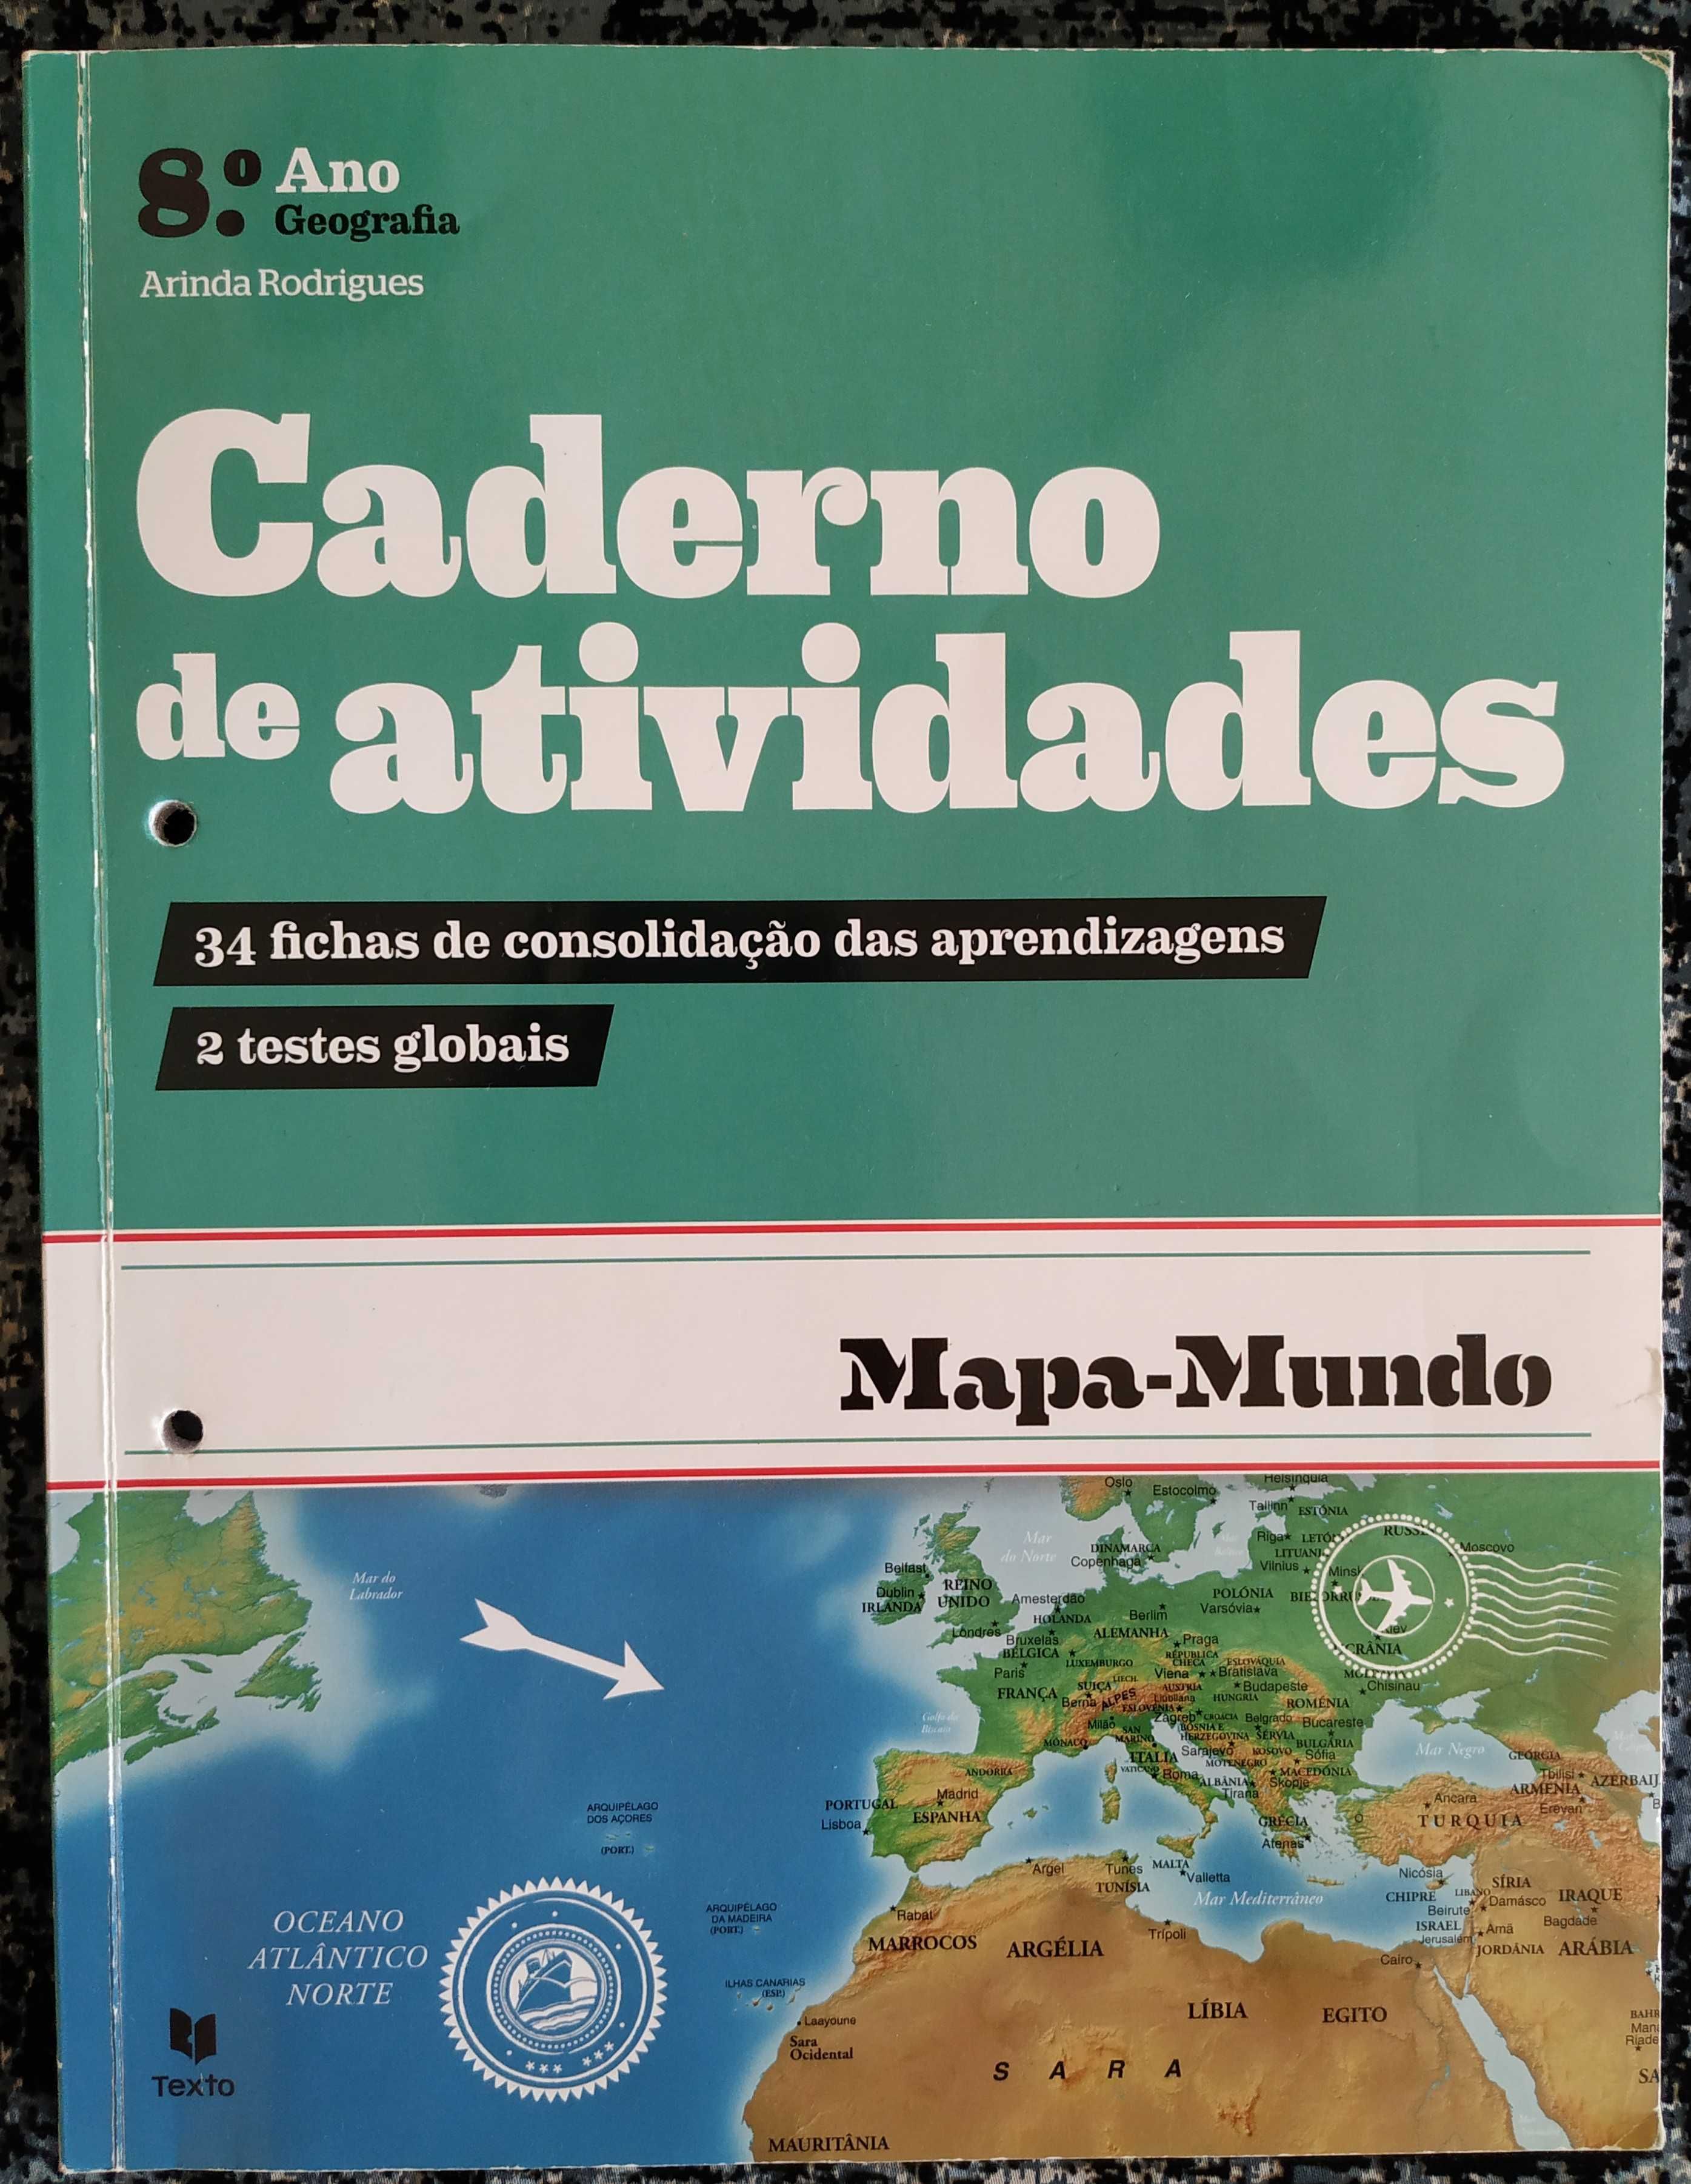 Caderno de atividades de Geografia 8 ano, Mapa-Mundo.